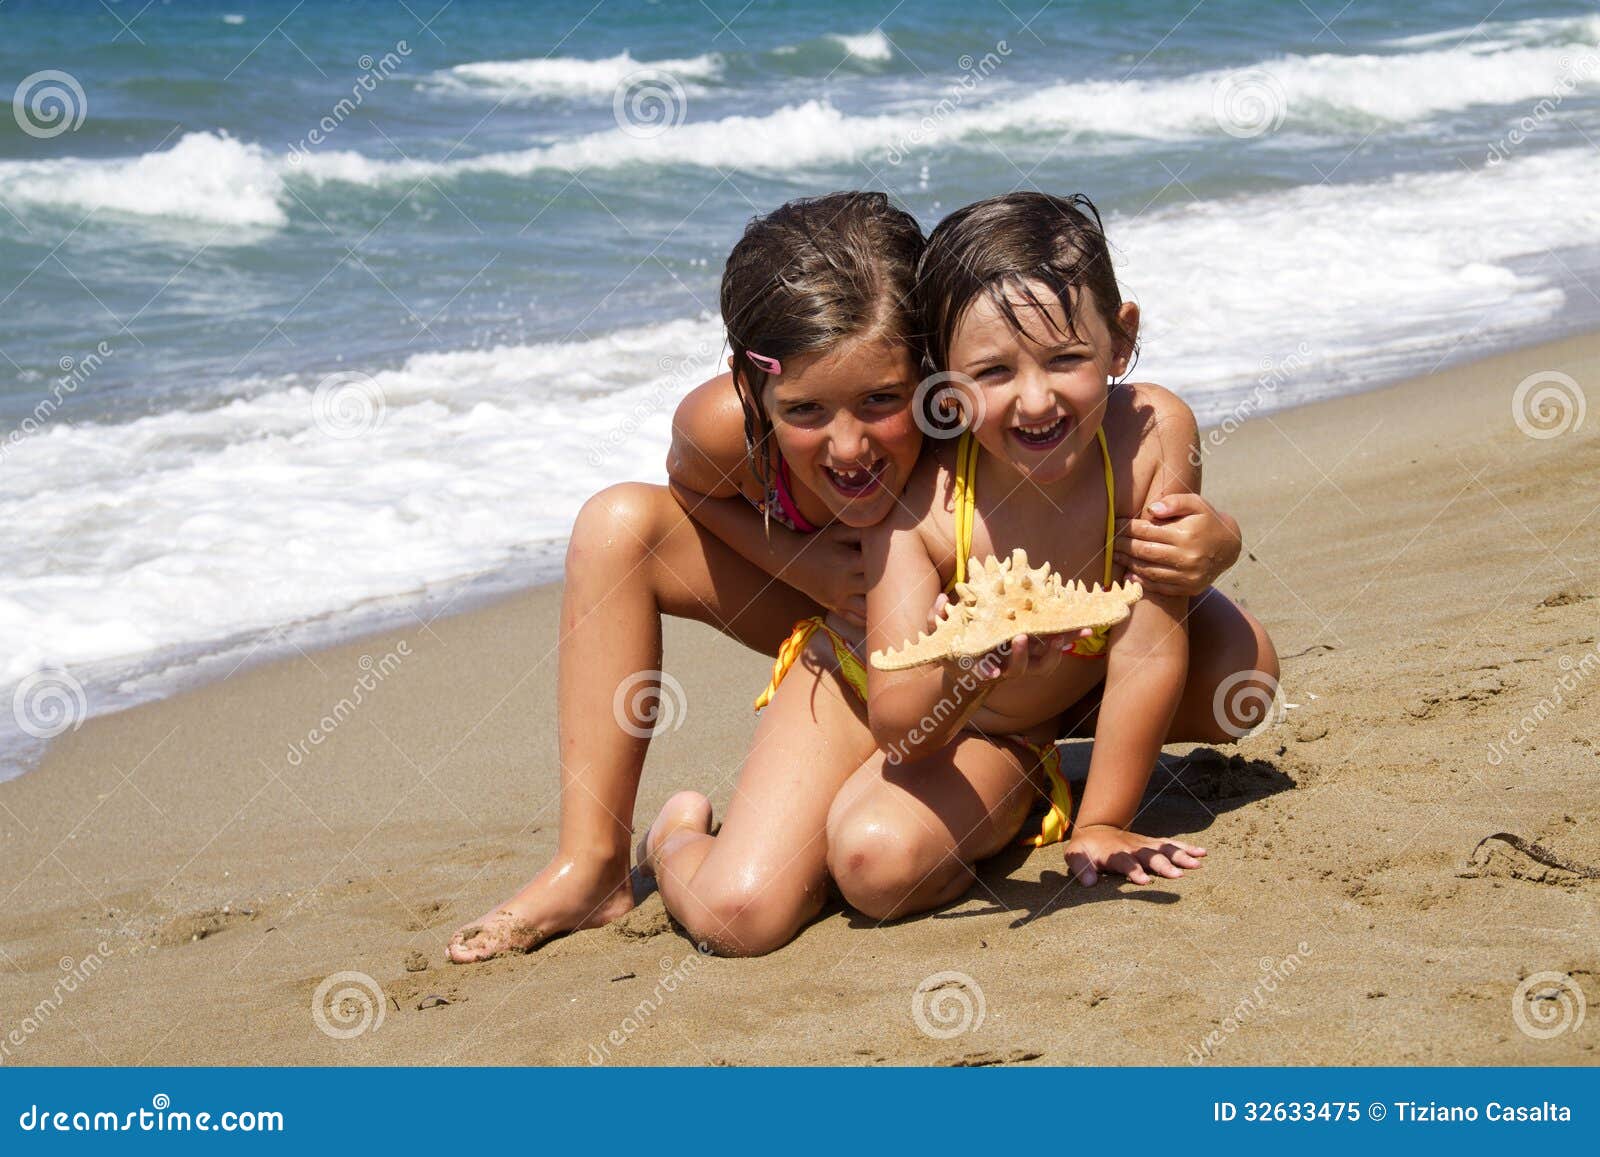 фото детей на голом пляже фото 72